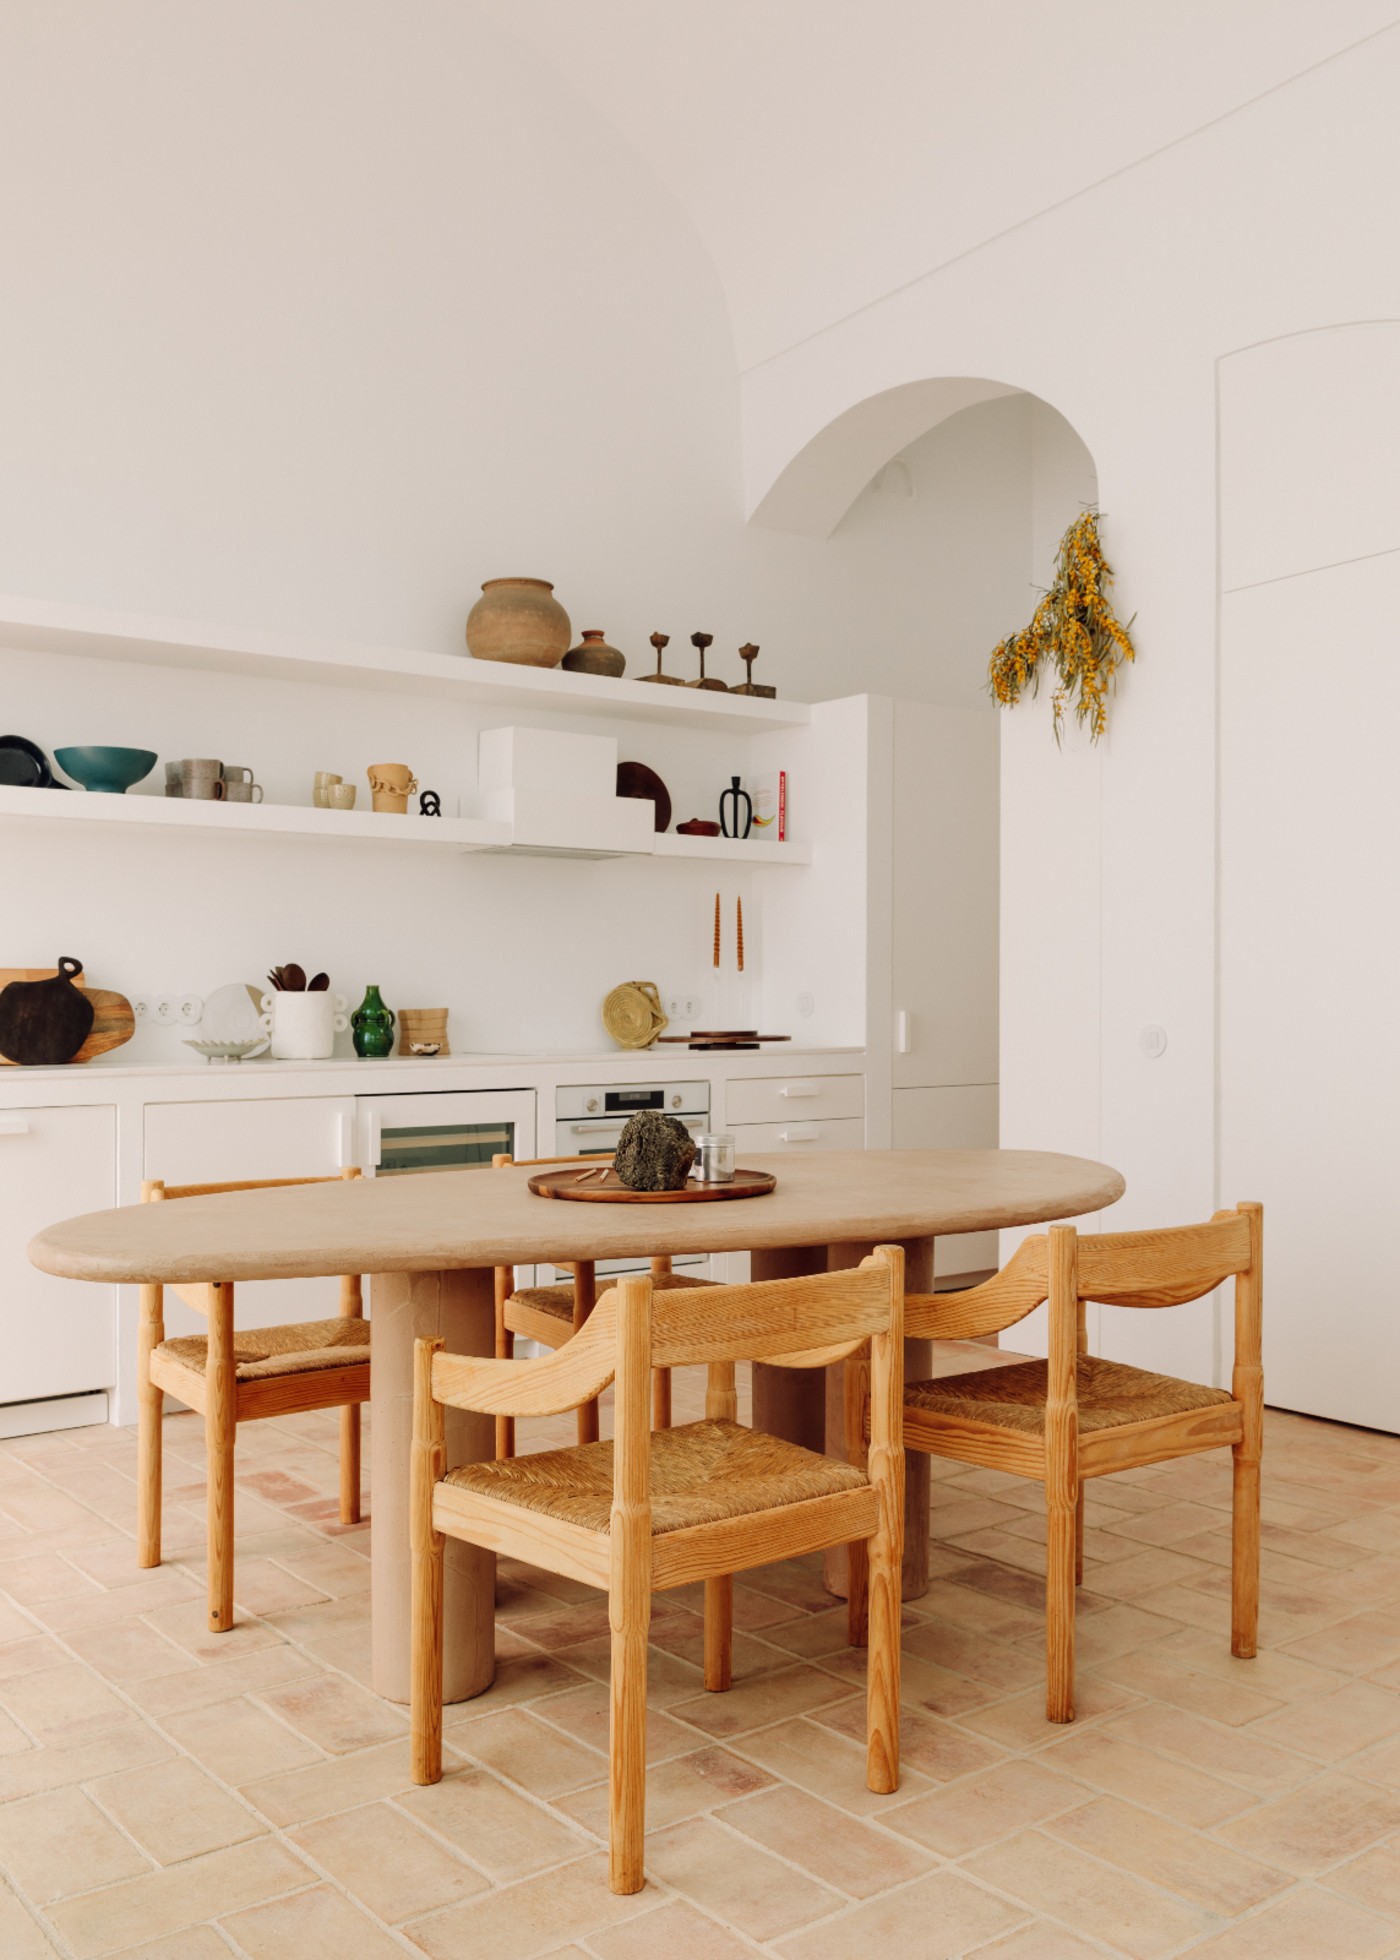 Décor do dia: cozinha com pé-direito alto e detalhes rústicos em Portugal (Foto: The Adresses/ Francisco Nogueira)